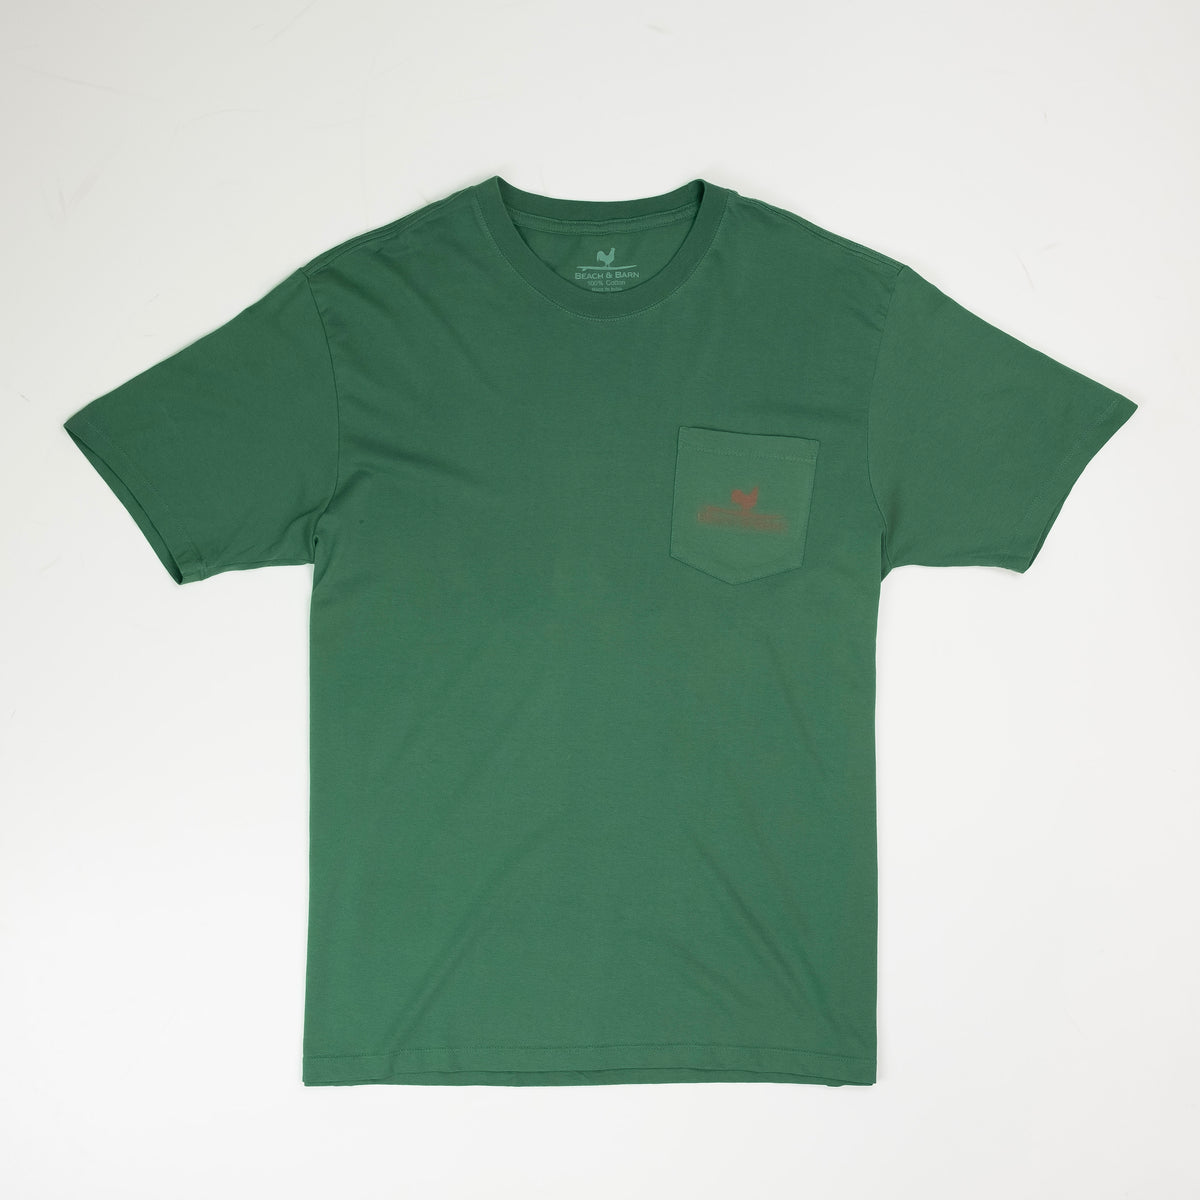 Sale - Agri-Coastal Commission Tee Shirt